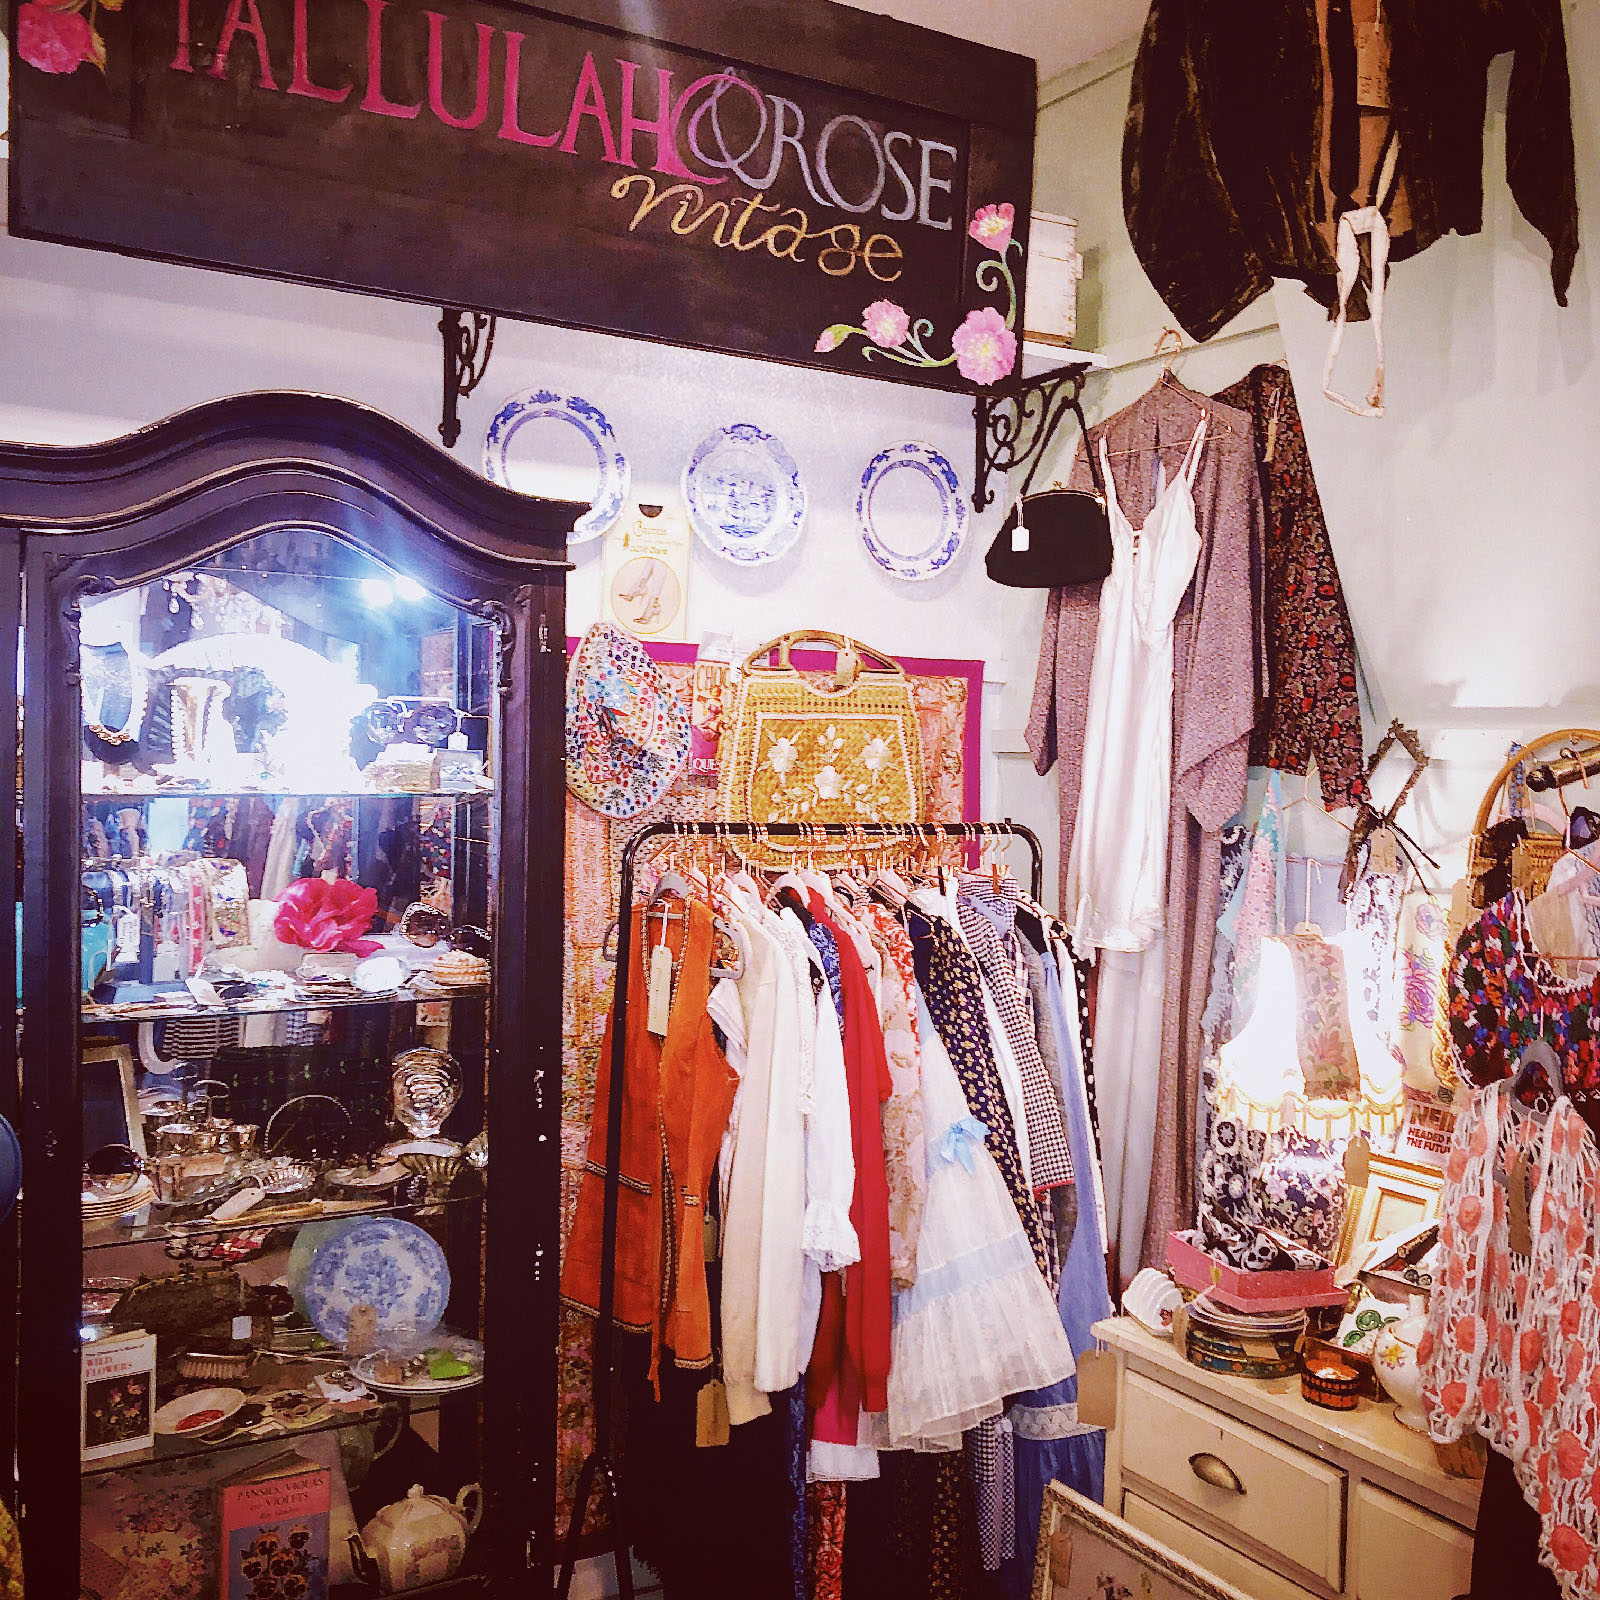 Tallulah & Rose Vintage Shop